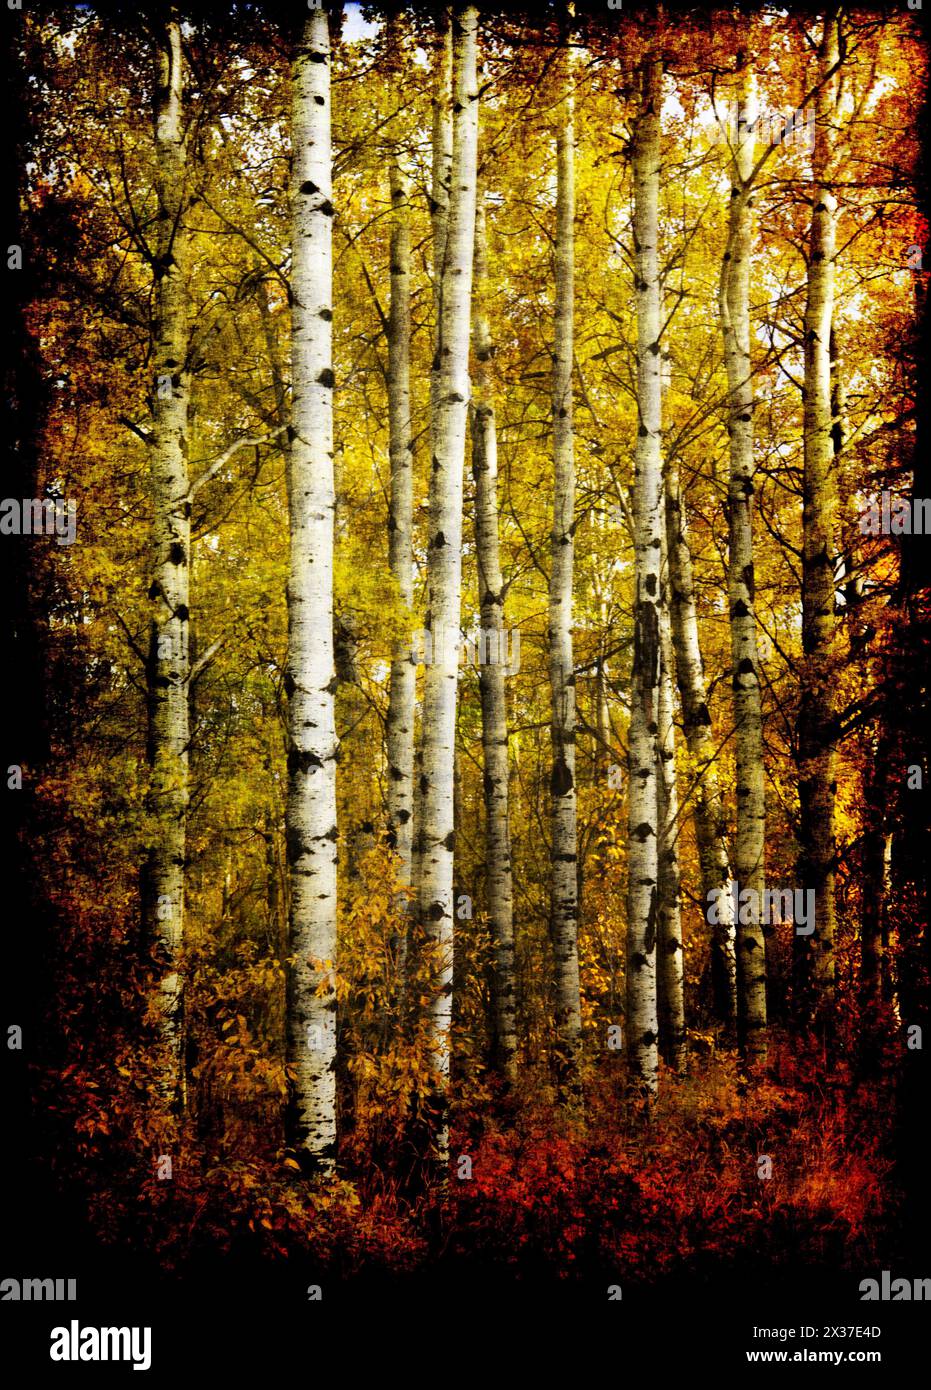 Vertikale Bäume in Herbstfarben mit einem kunstvollen Effekt, der den schönen Herbst 01 zeigt Stockfoto